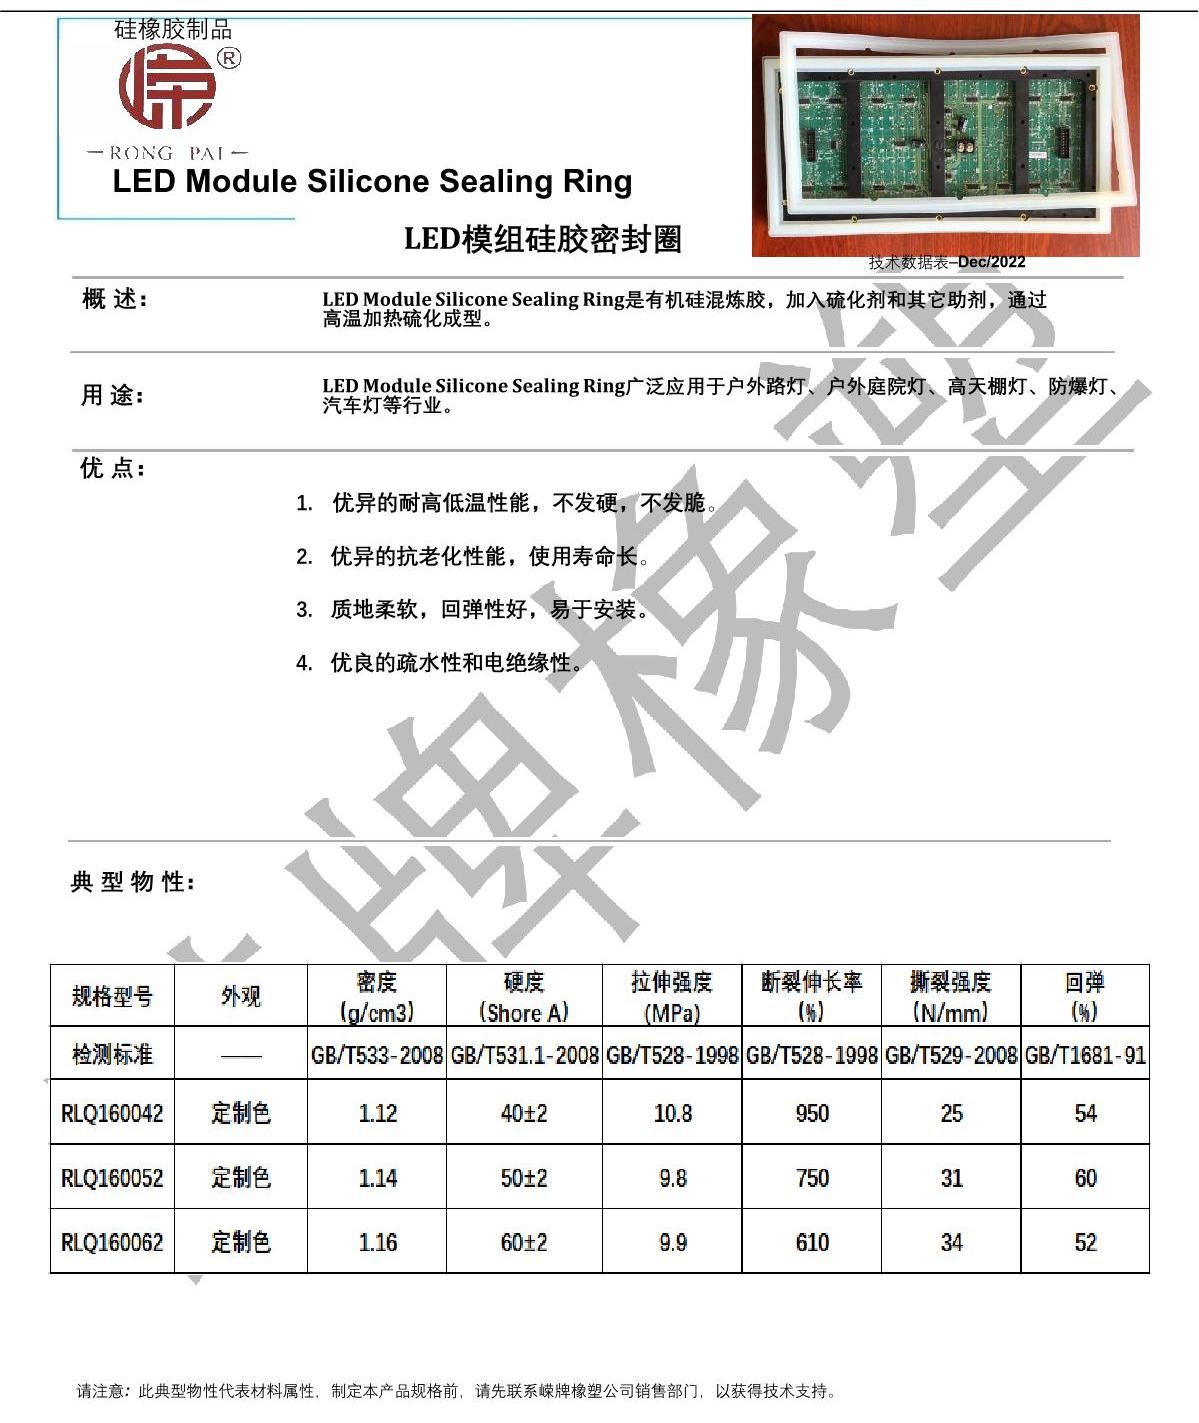 LED模组硅胶密封圈产品说明_1.JPG